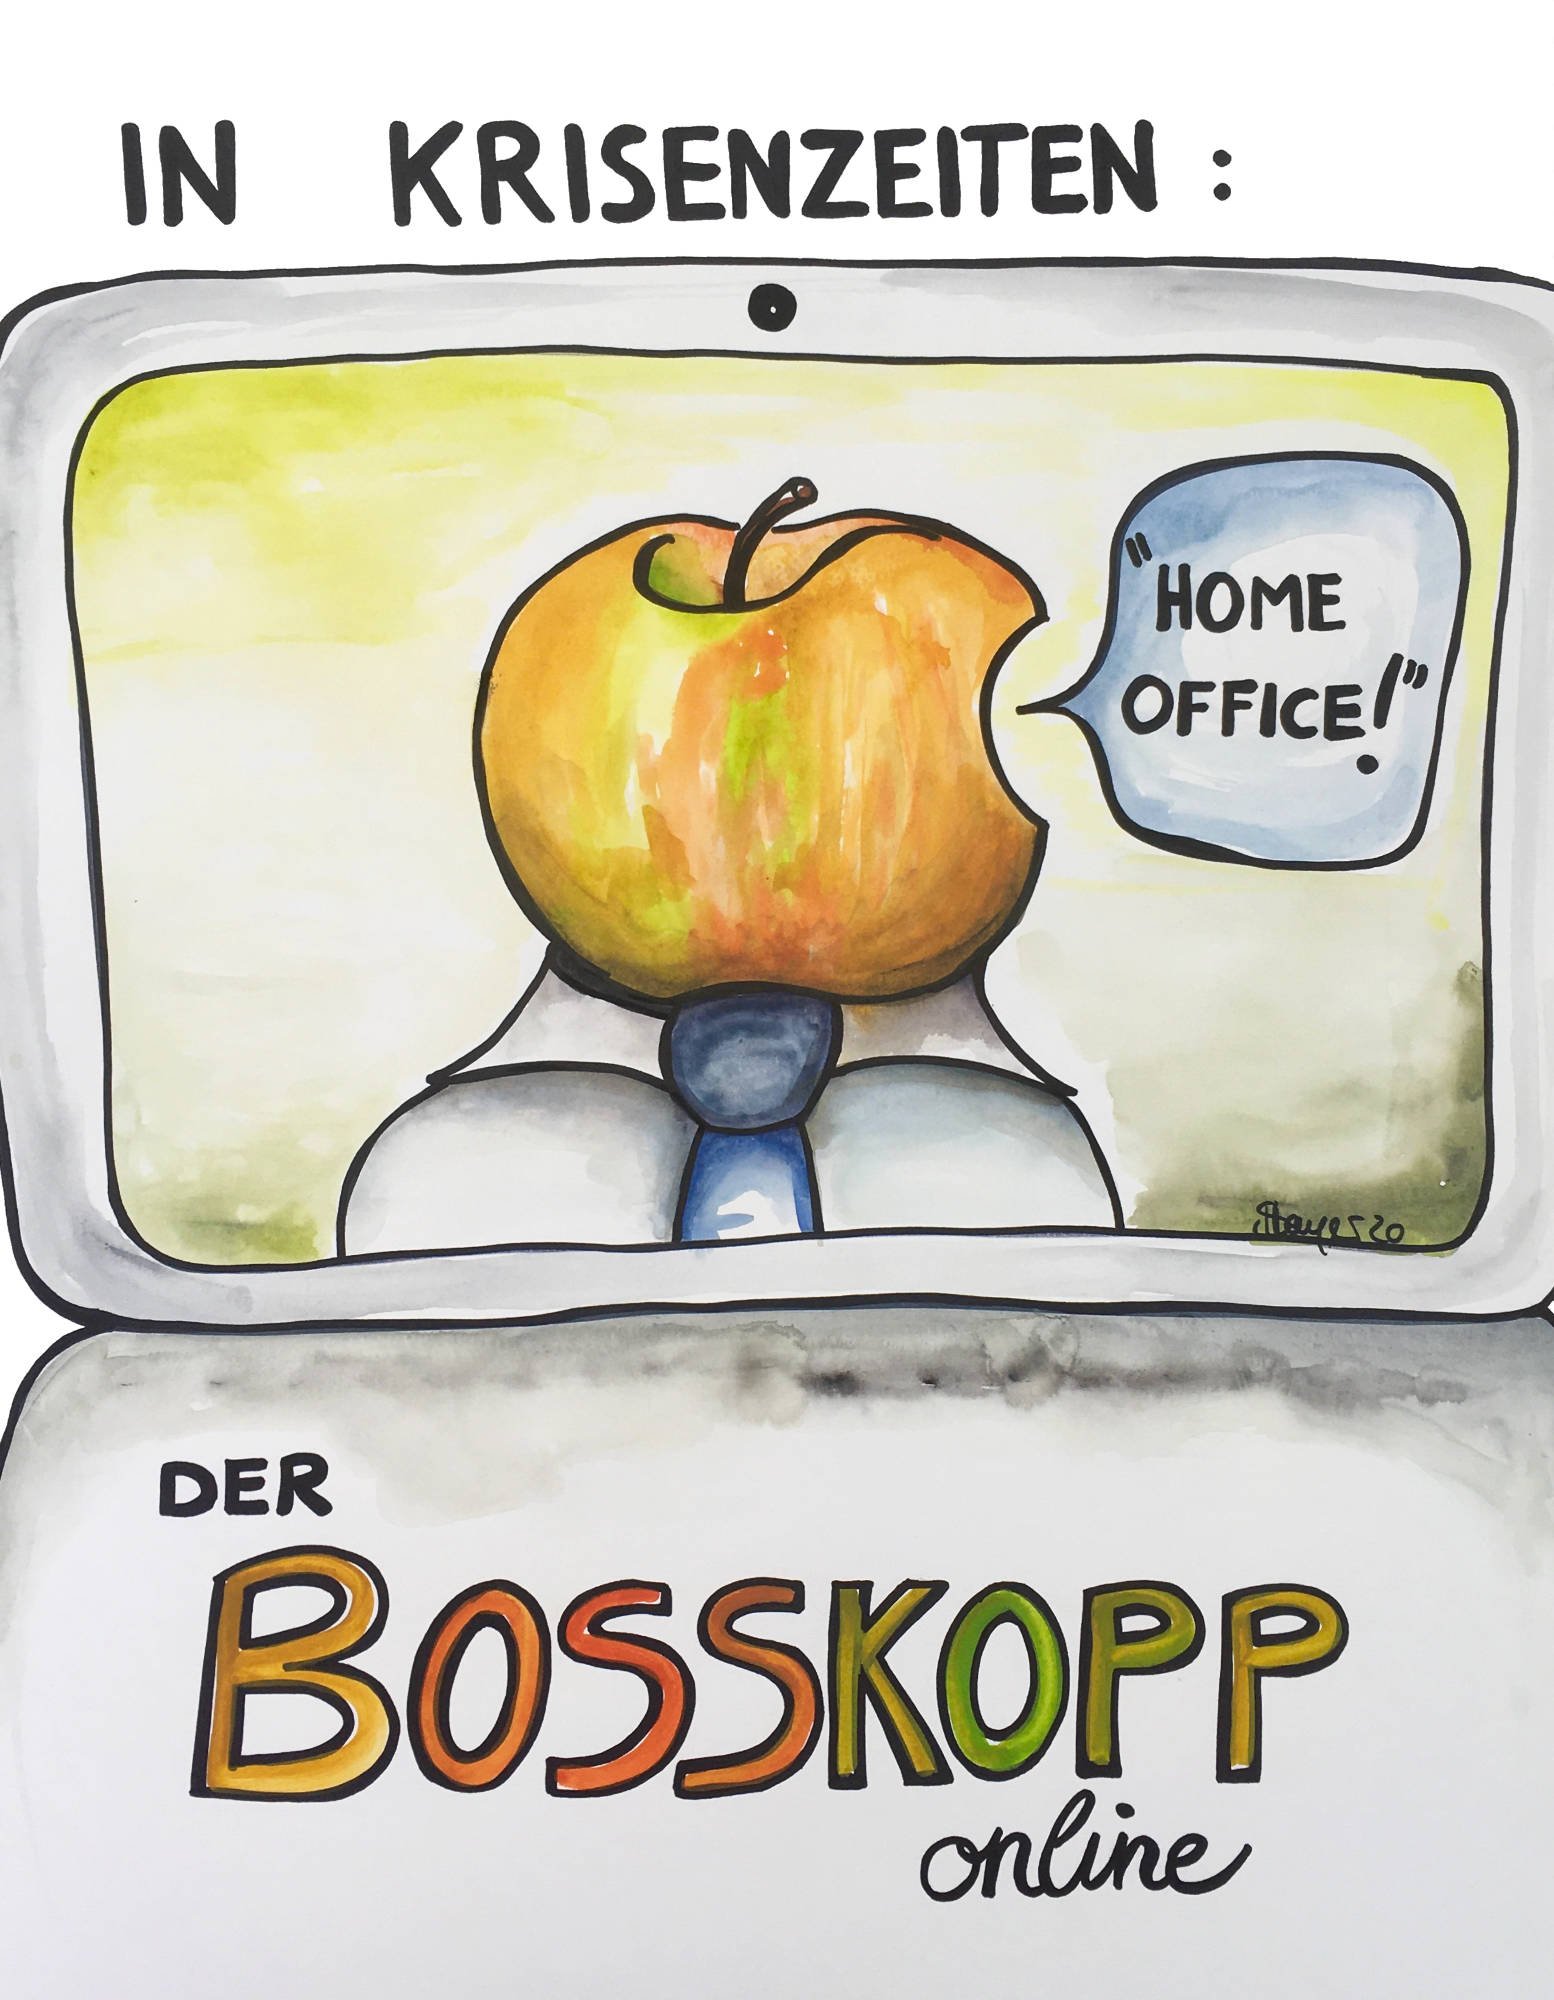 Bosskopp - Ein Mann mit Apfelkopf auf dem Bildschirm bei einer Videokonferenz